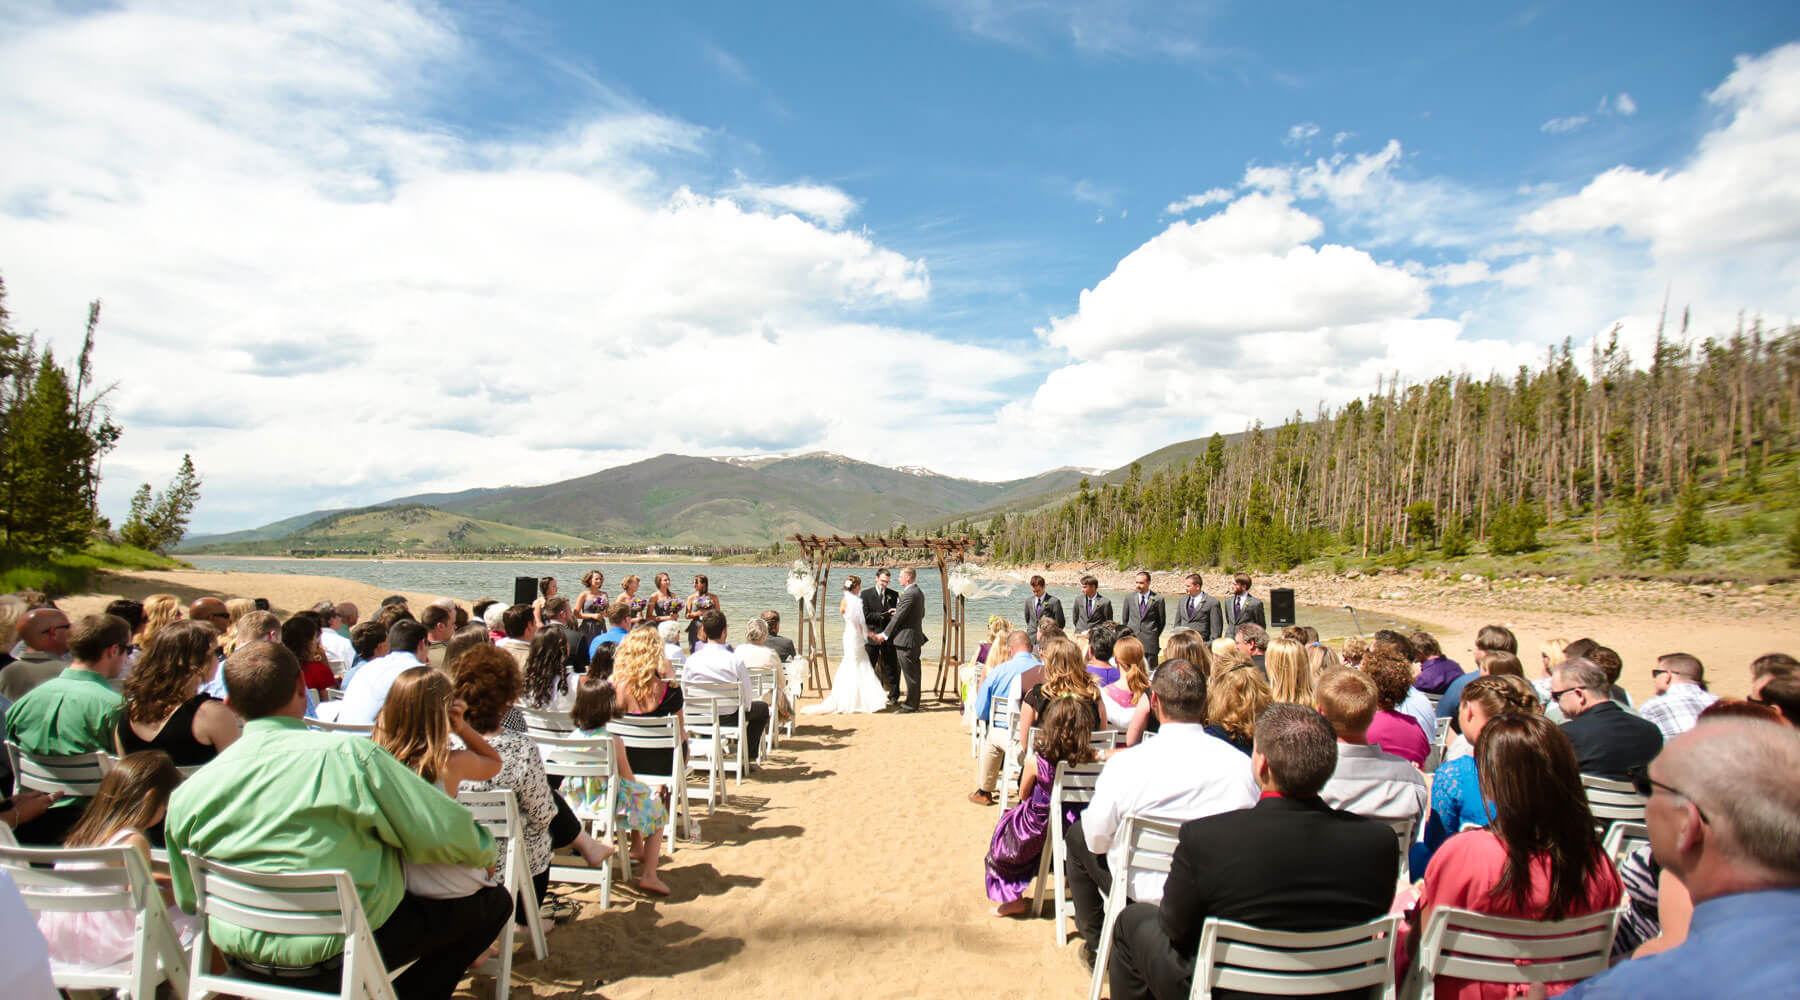 Colorado Mountain wedding venue- Windy Point Wedding Ceremony